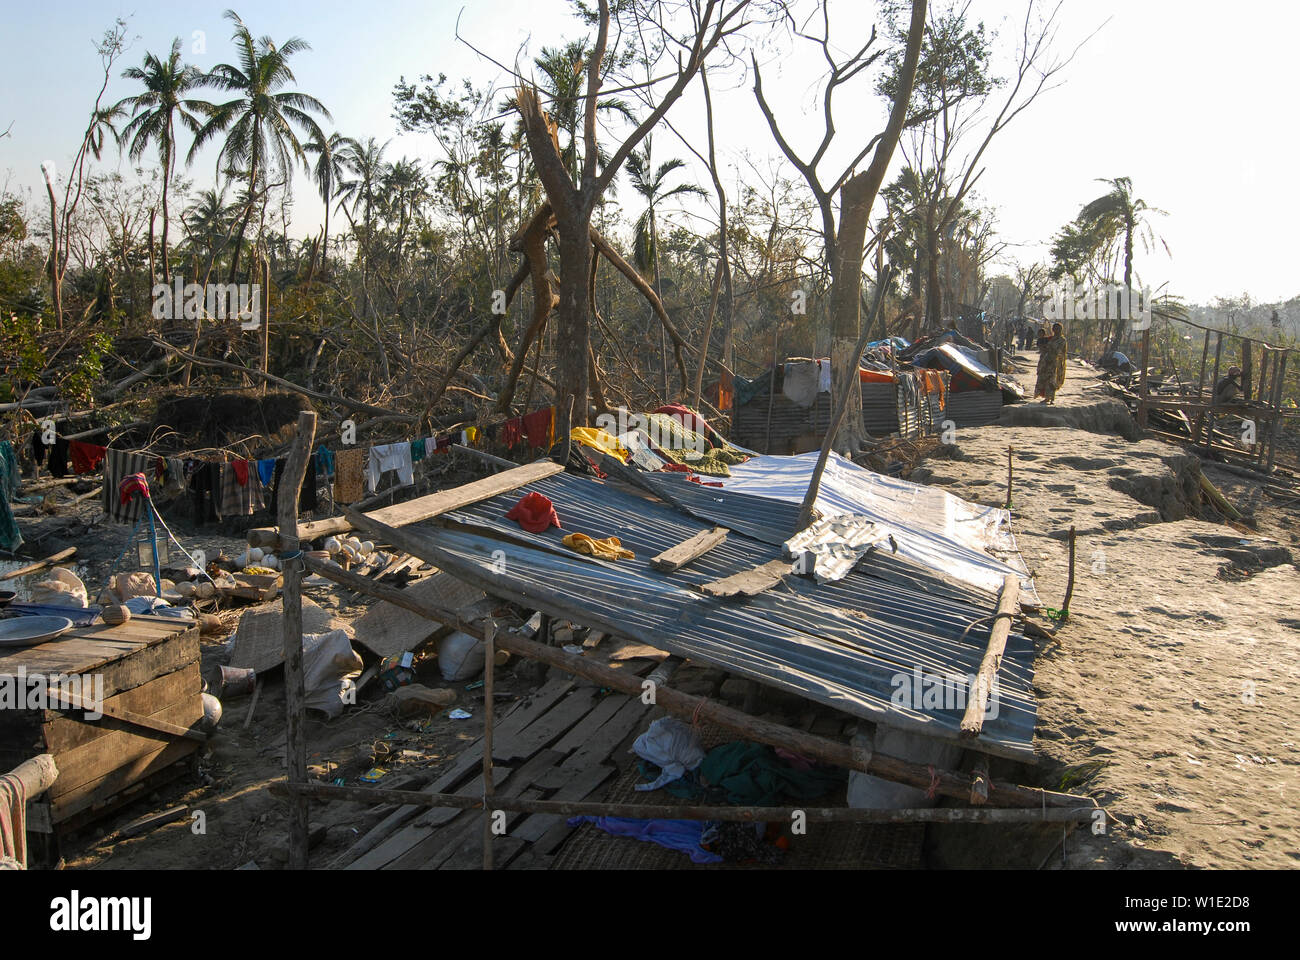 Il Bangladesh, il ciclone Sidr e alta marea distruggono villaggi in Southkhali nel distretto Bagerhat / BANGLADESCH, der Zyklon Wirbelsturm Sidr und eine Sturmflut zerstoeren Doerfer Kuestengebiet im von Southkhali Foto Stock